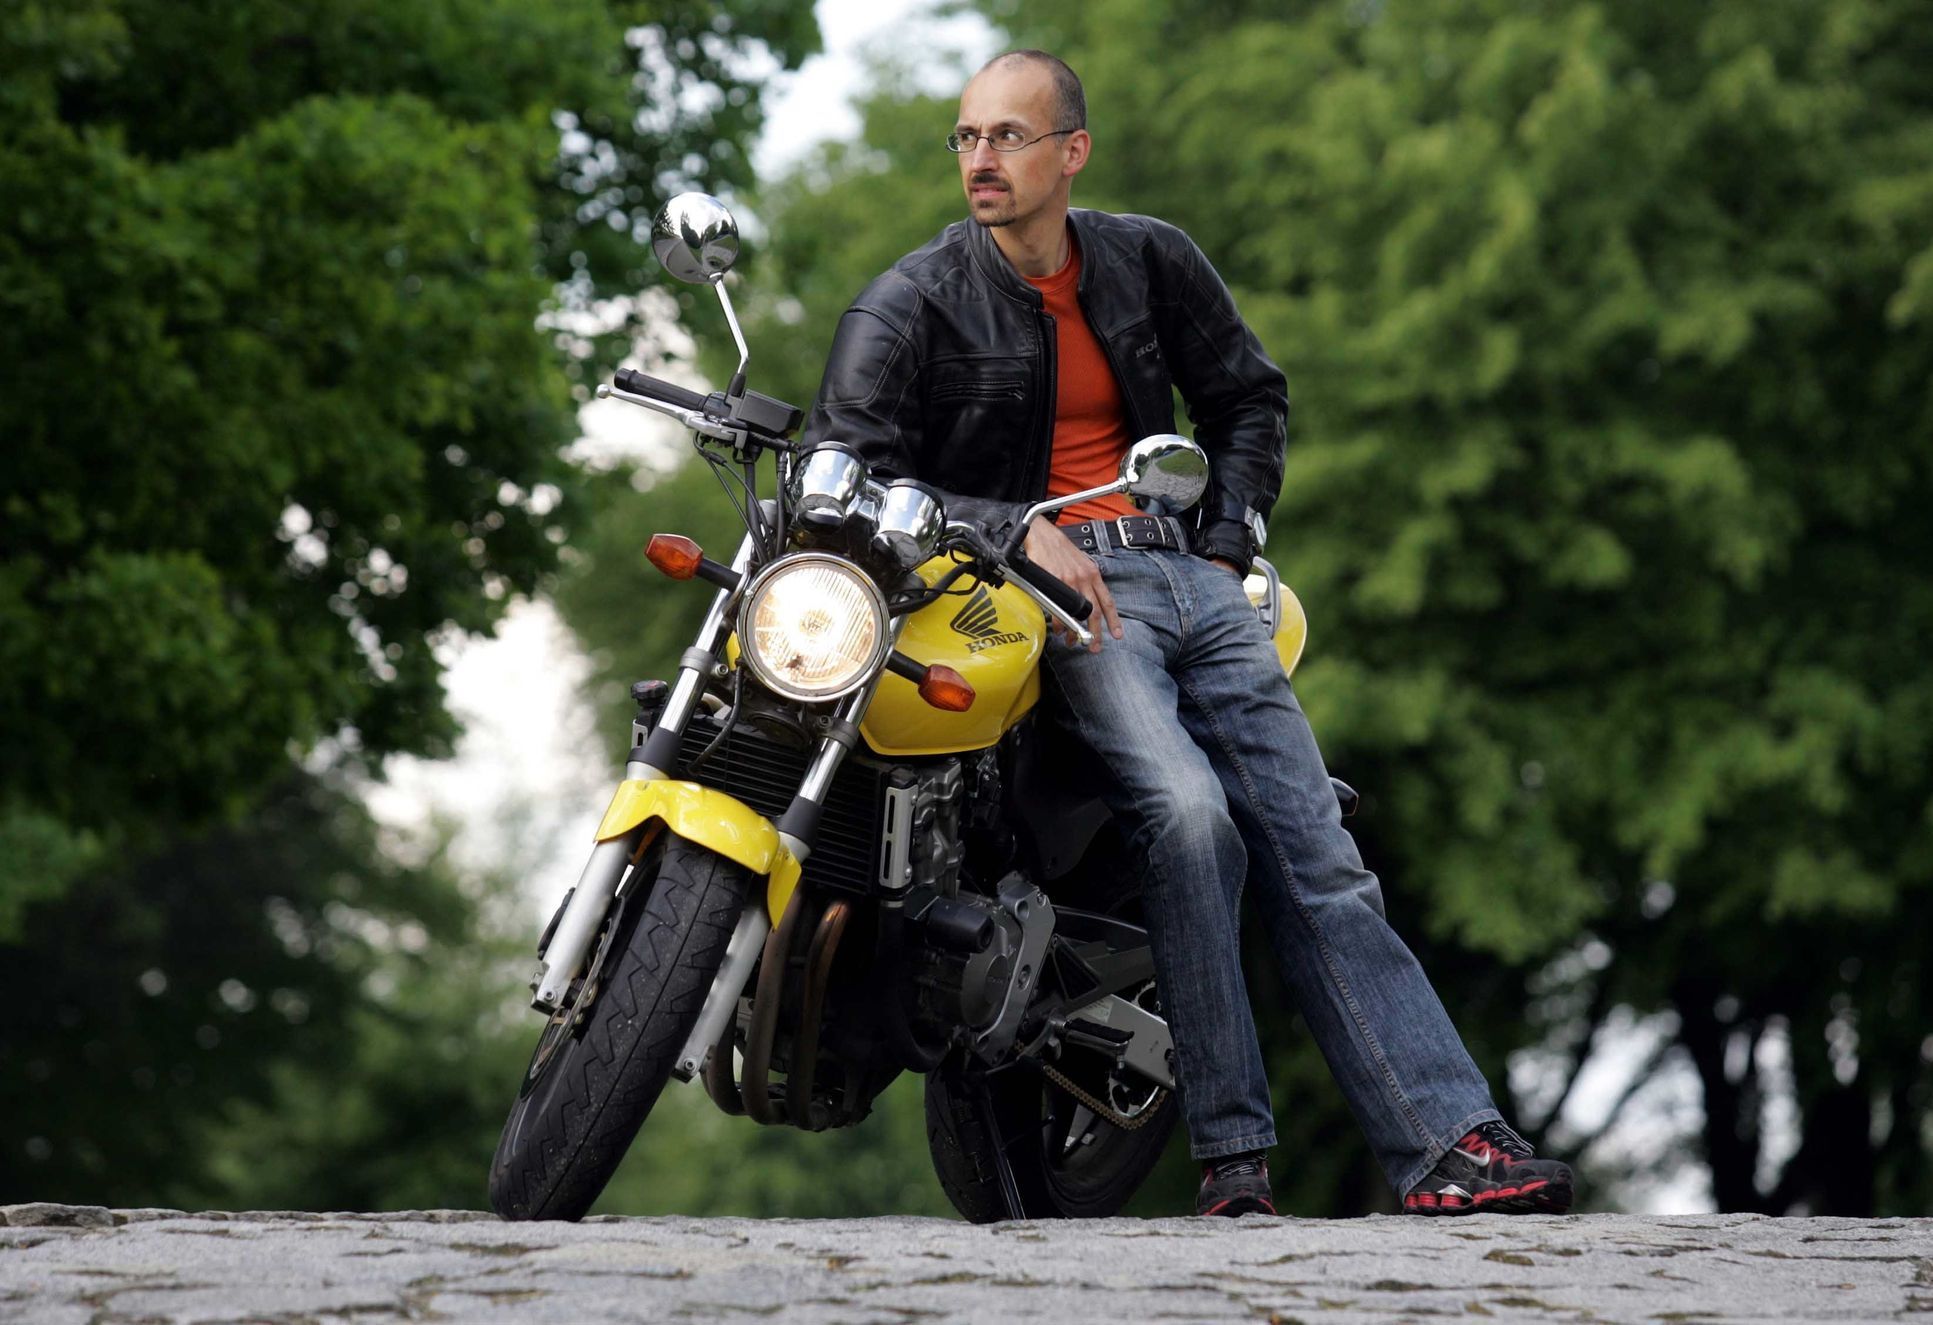 Hodinky Prim Rider + Jawa Rider